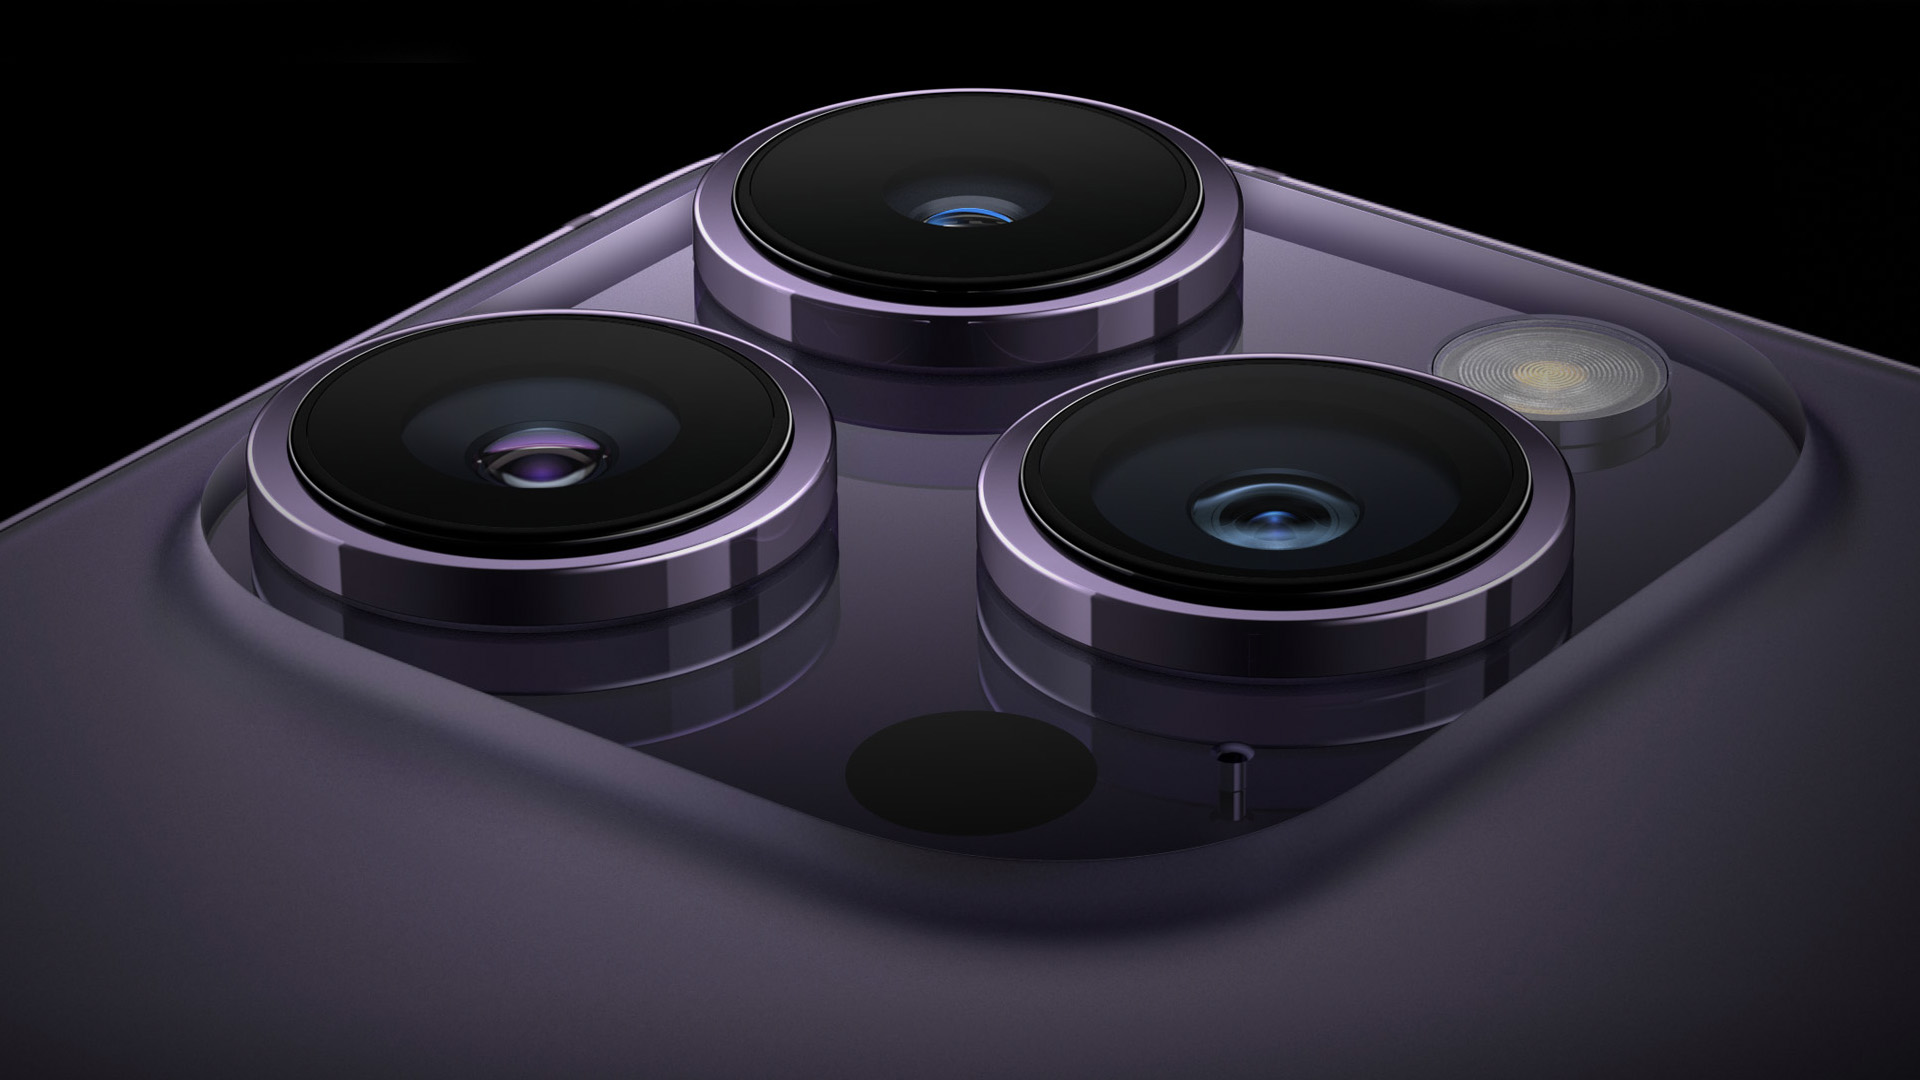 Крупный план тройной камеры серии iPhone 14 Pro, изображено устройство в цветовой гамме Deep Purple.